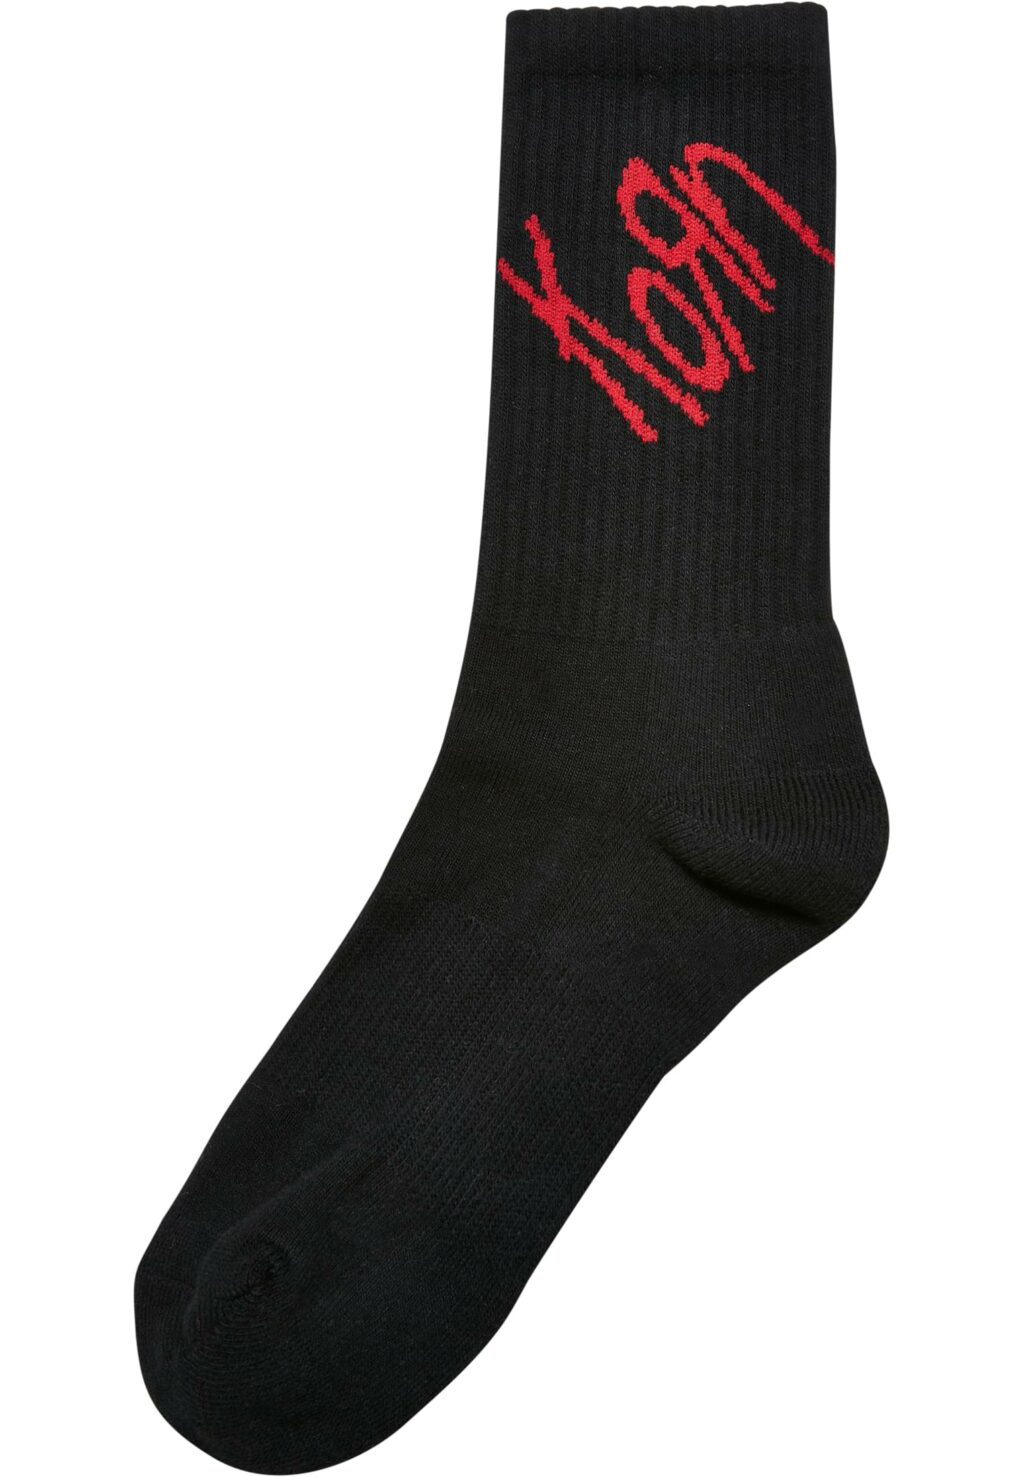 Korn Socks 2-Pack black/white MC813